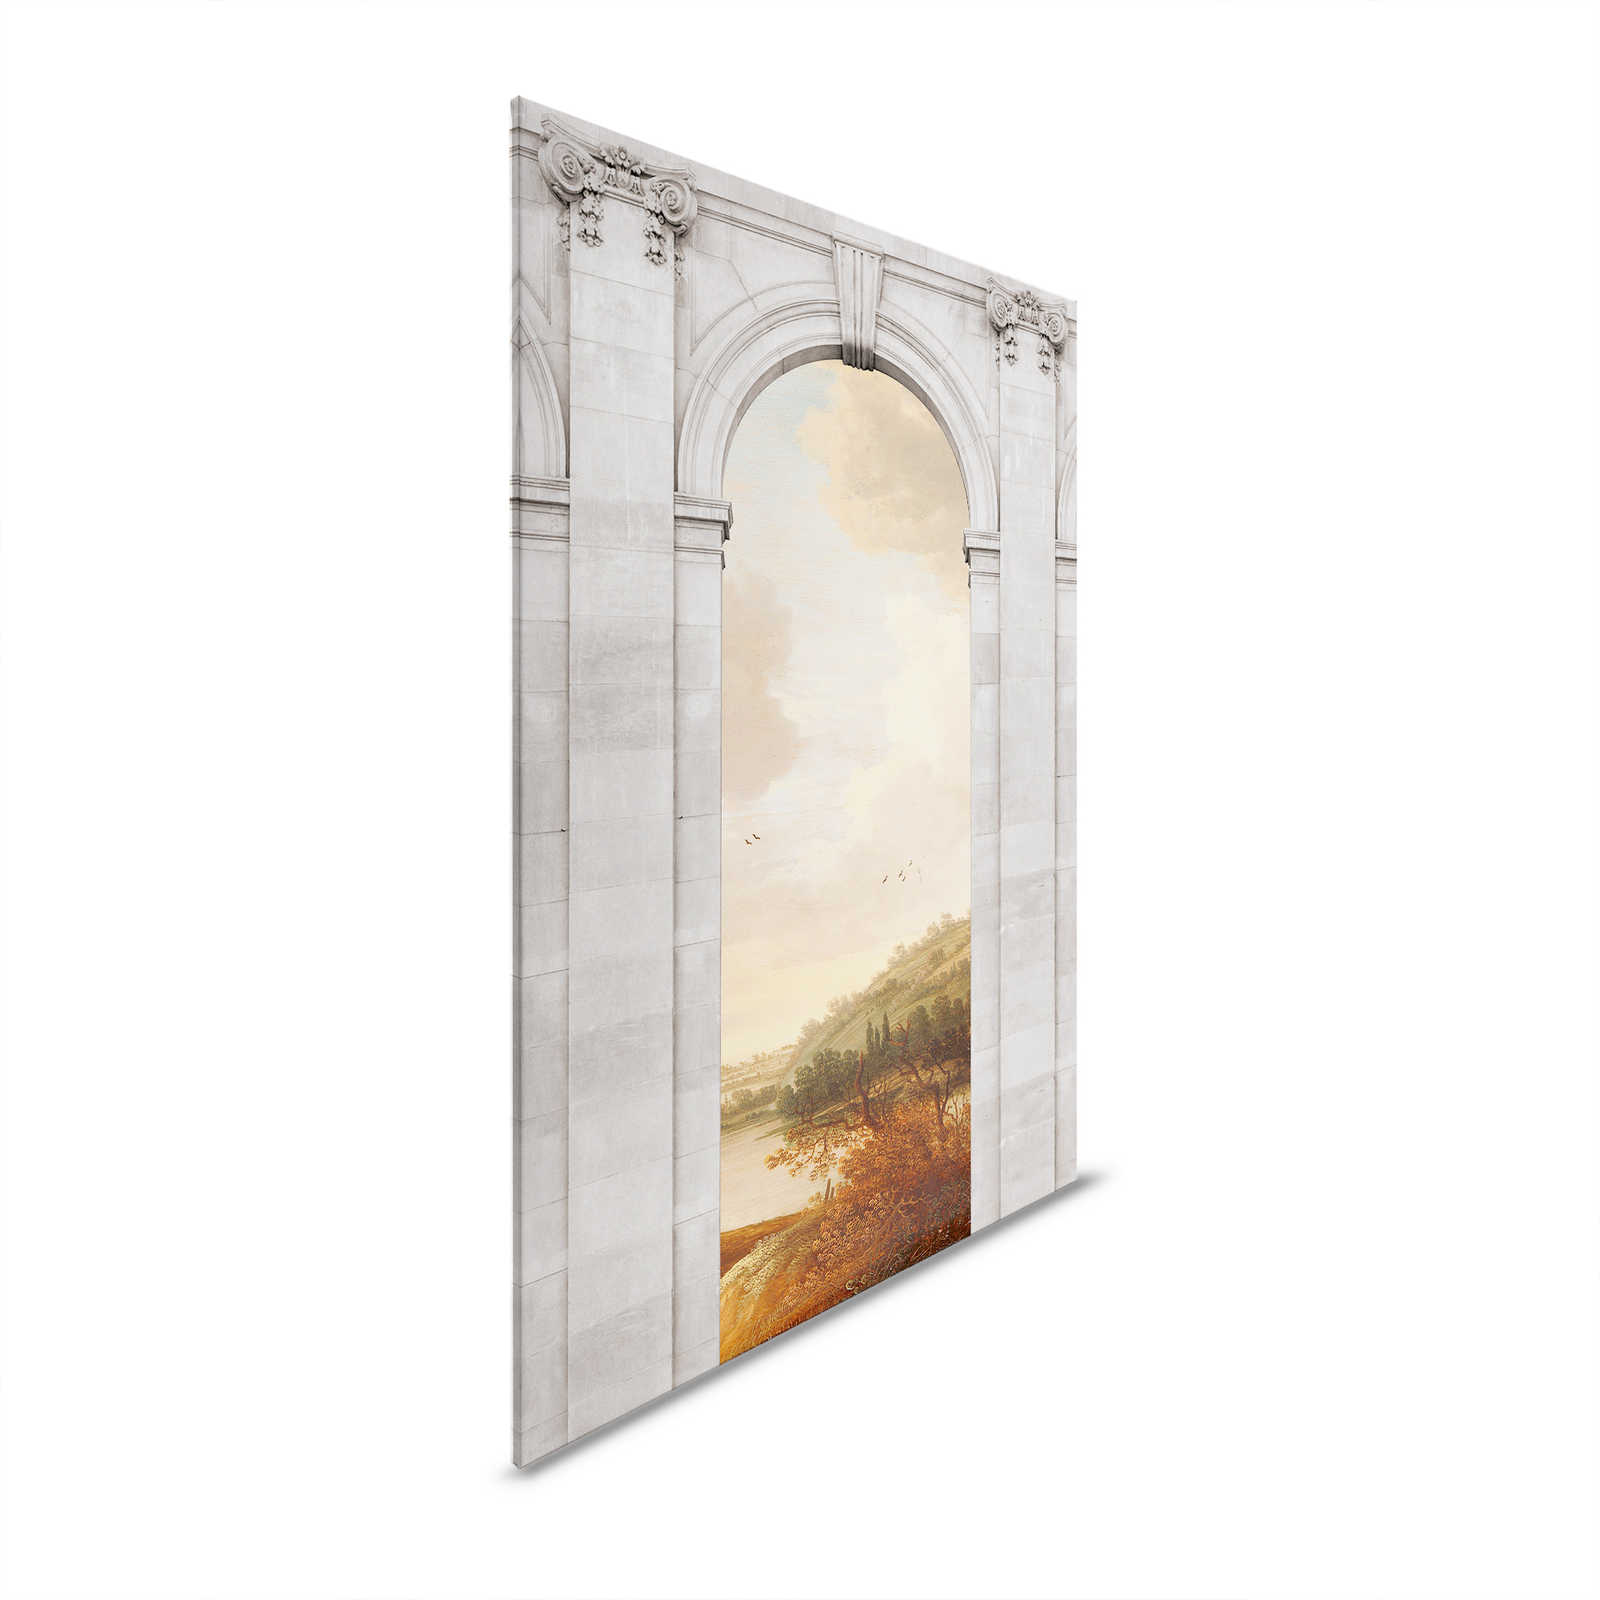 Castello 1 - Canvas painting Landscape & Arch Architecture - 1.20 m x 0.80 m
